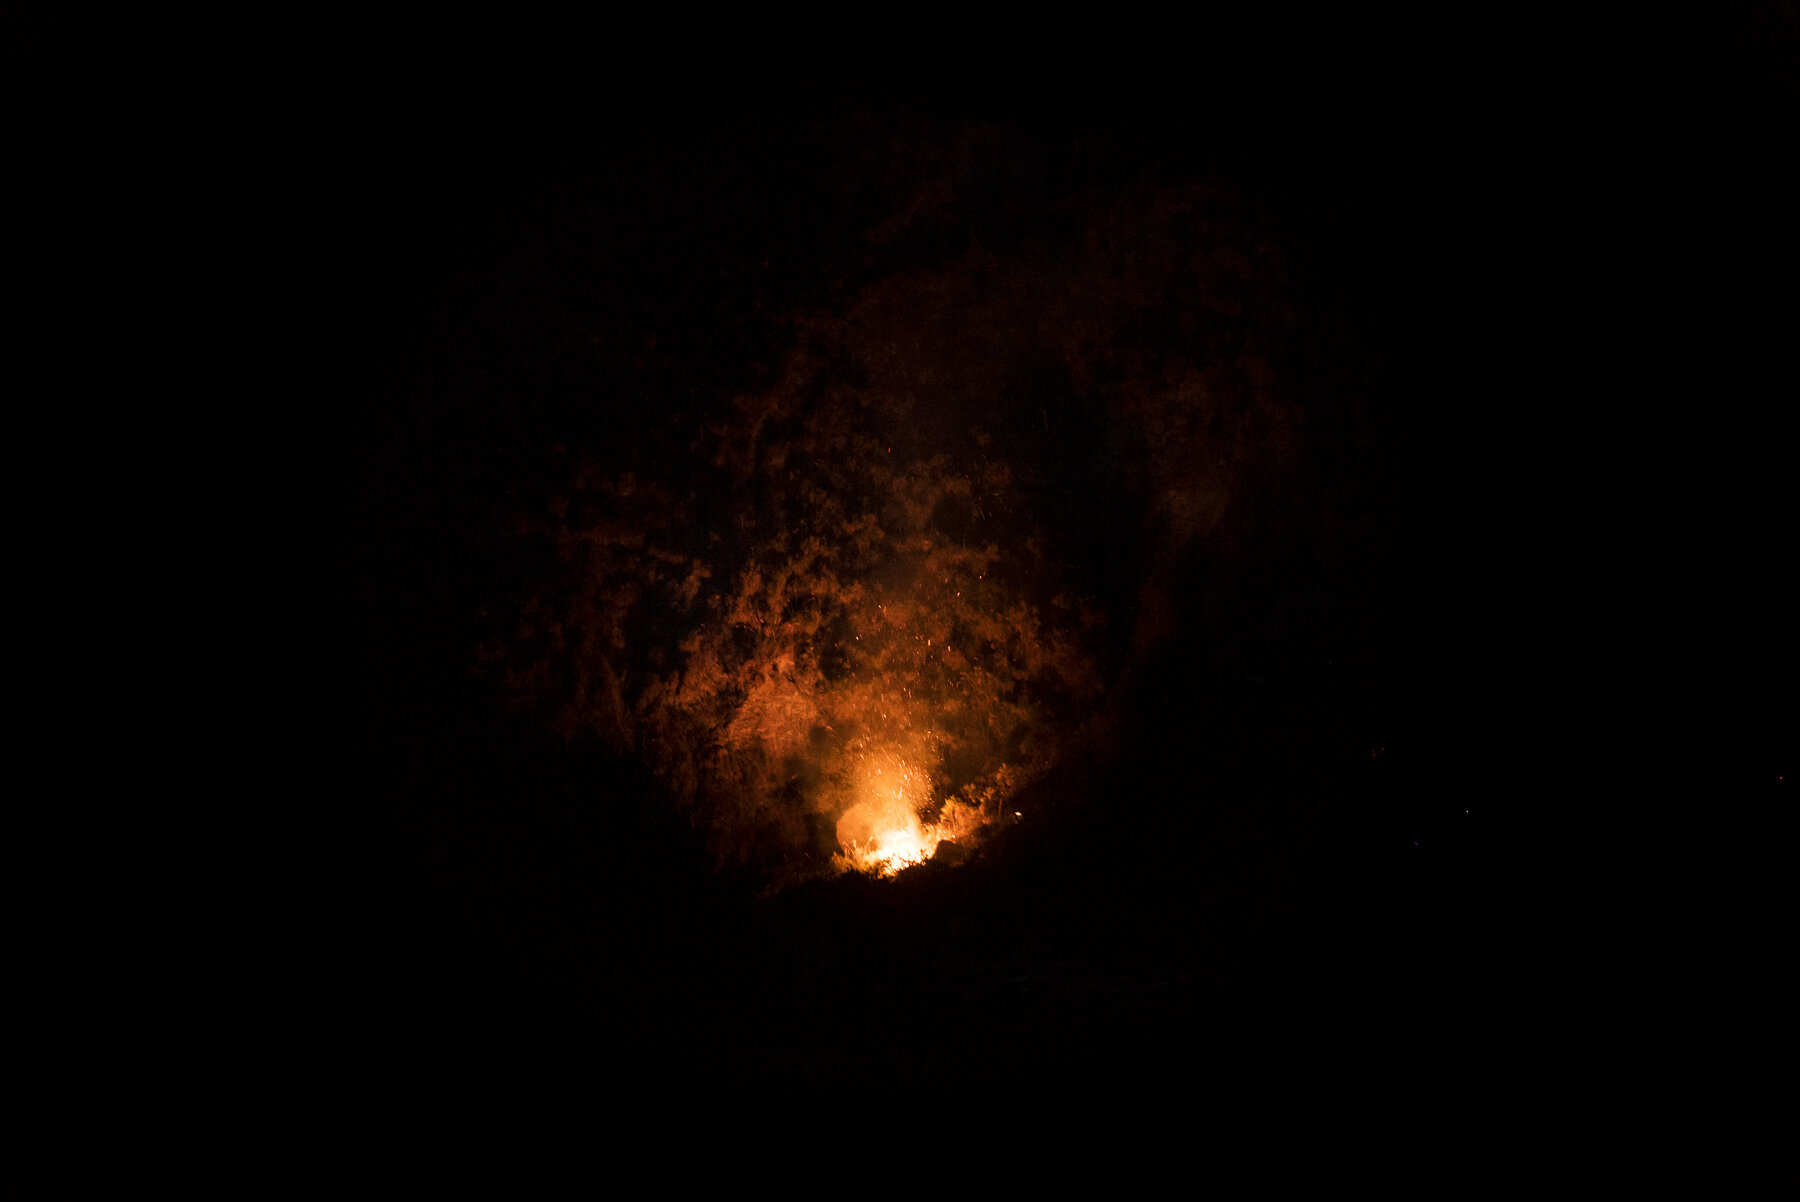  Un incendio scoppiato il 14 agosto 2018 a Barone, ai confini del Parco Nazionale dell’Aspromonte. © JACOPO LA FORGIA / MICHELE SPATARI 